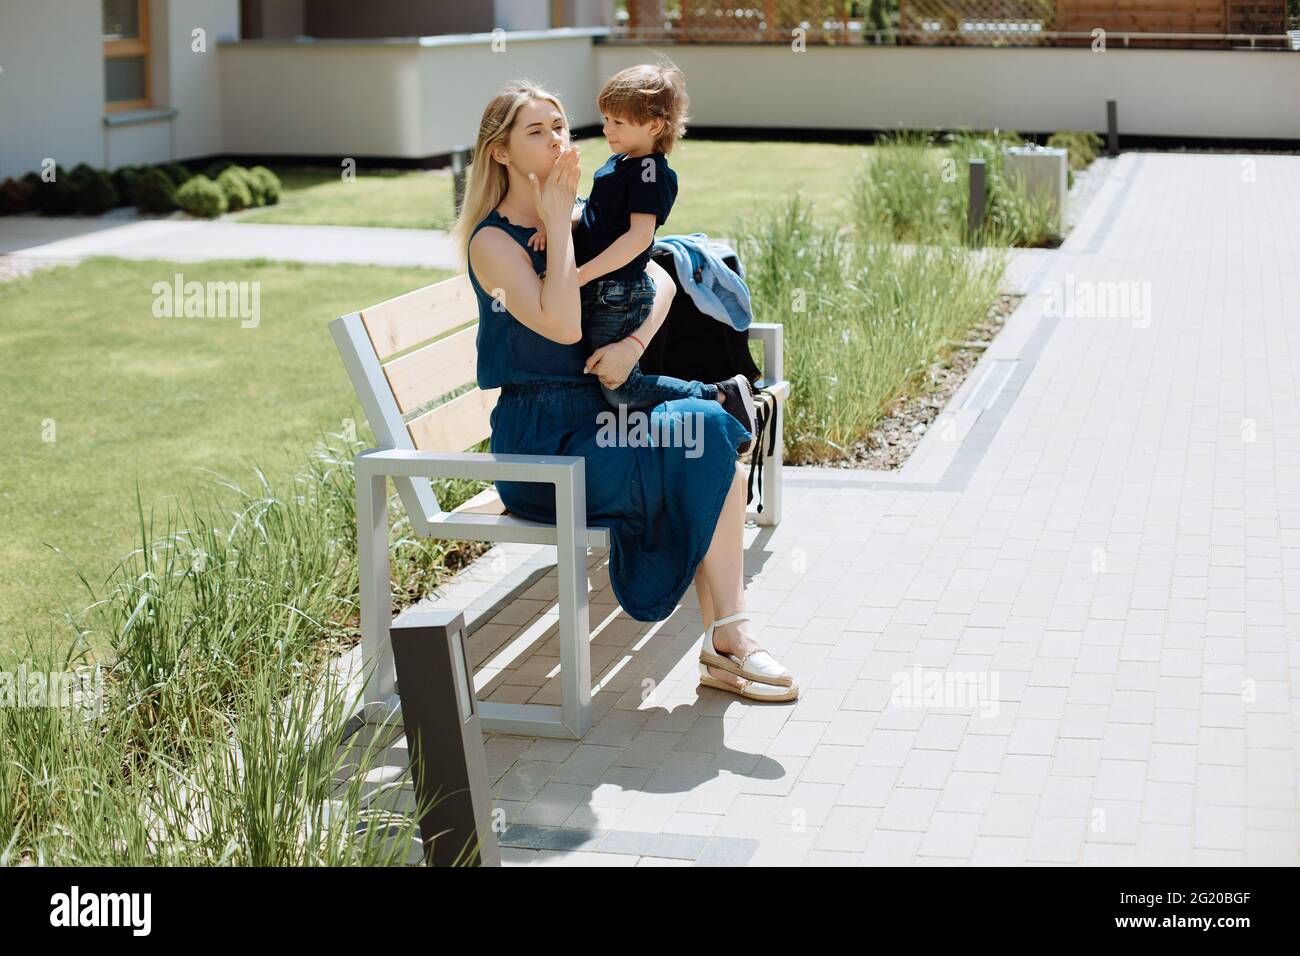 Une mère célibataire à pied est assise sur le banc avec son fils de 3 ans dans ses bras. Concept d'intimité et d'amour pour les enfants Banque D'Images